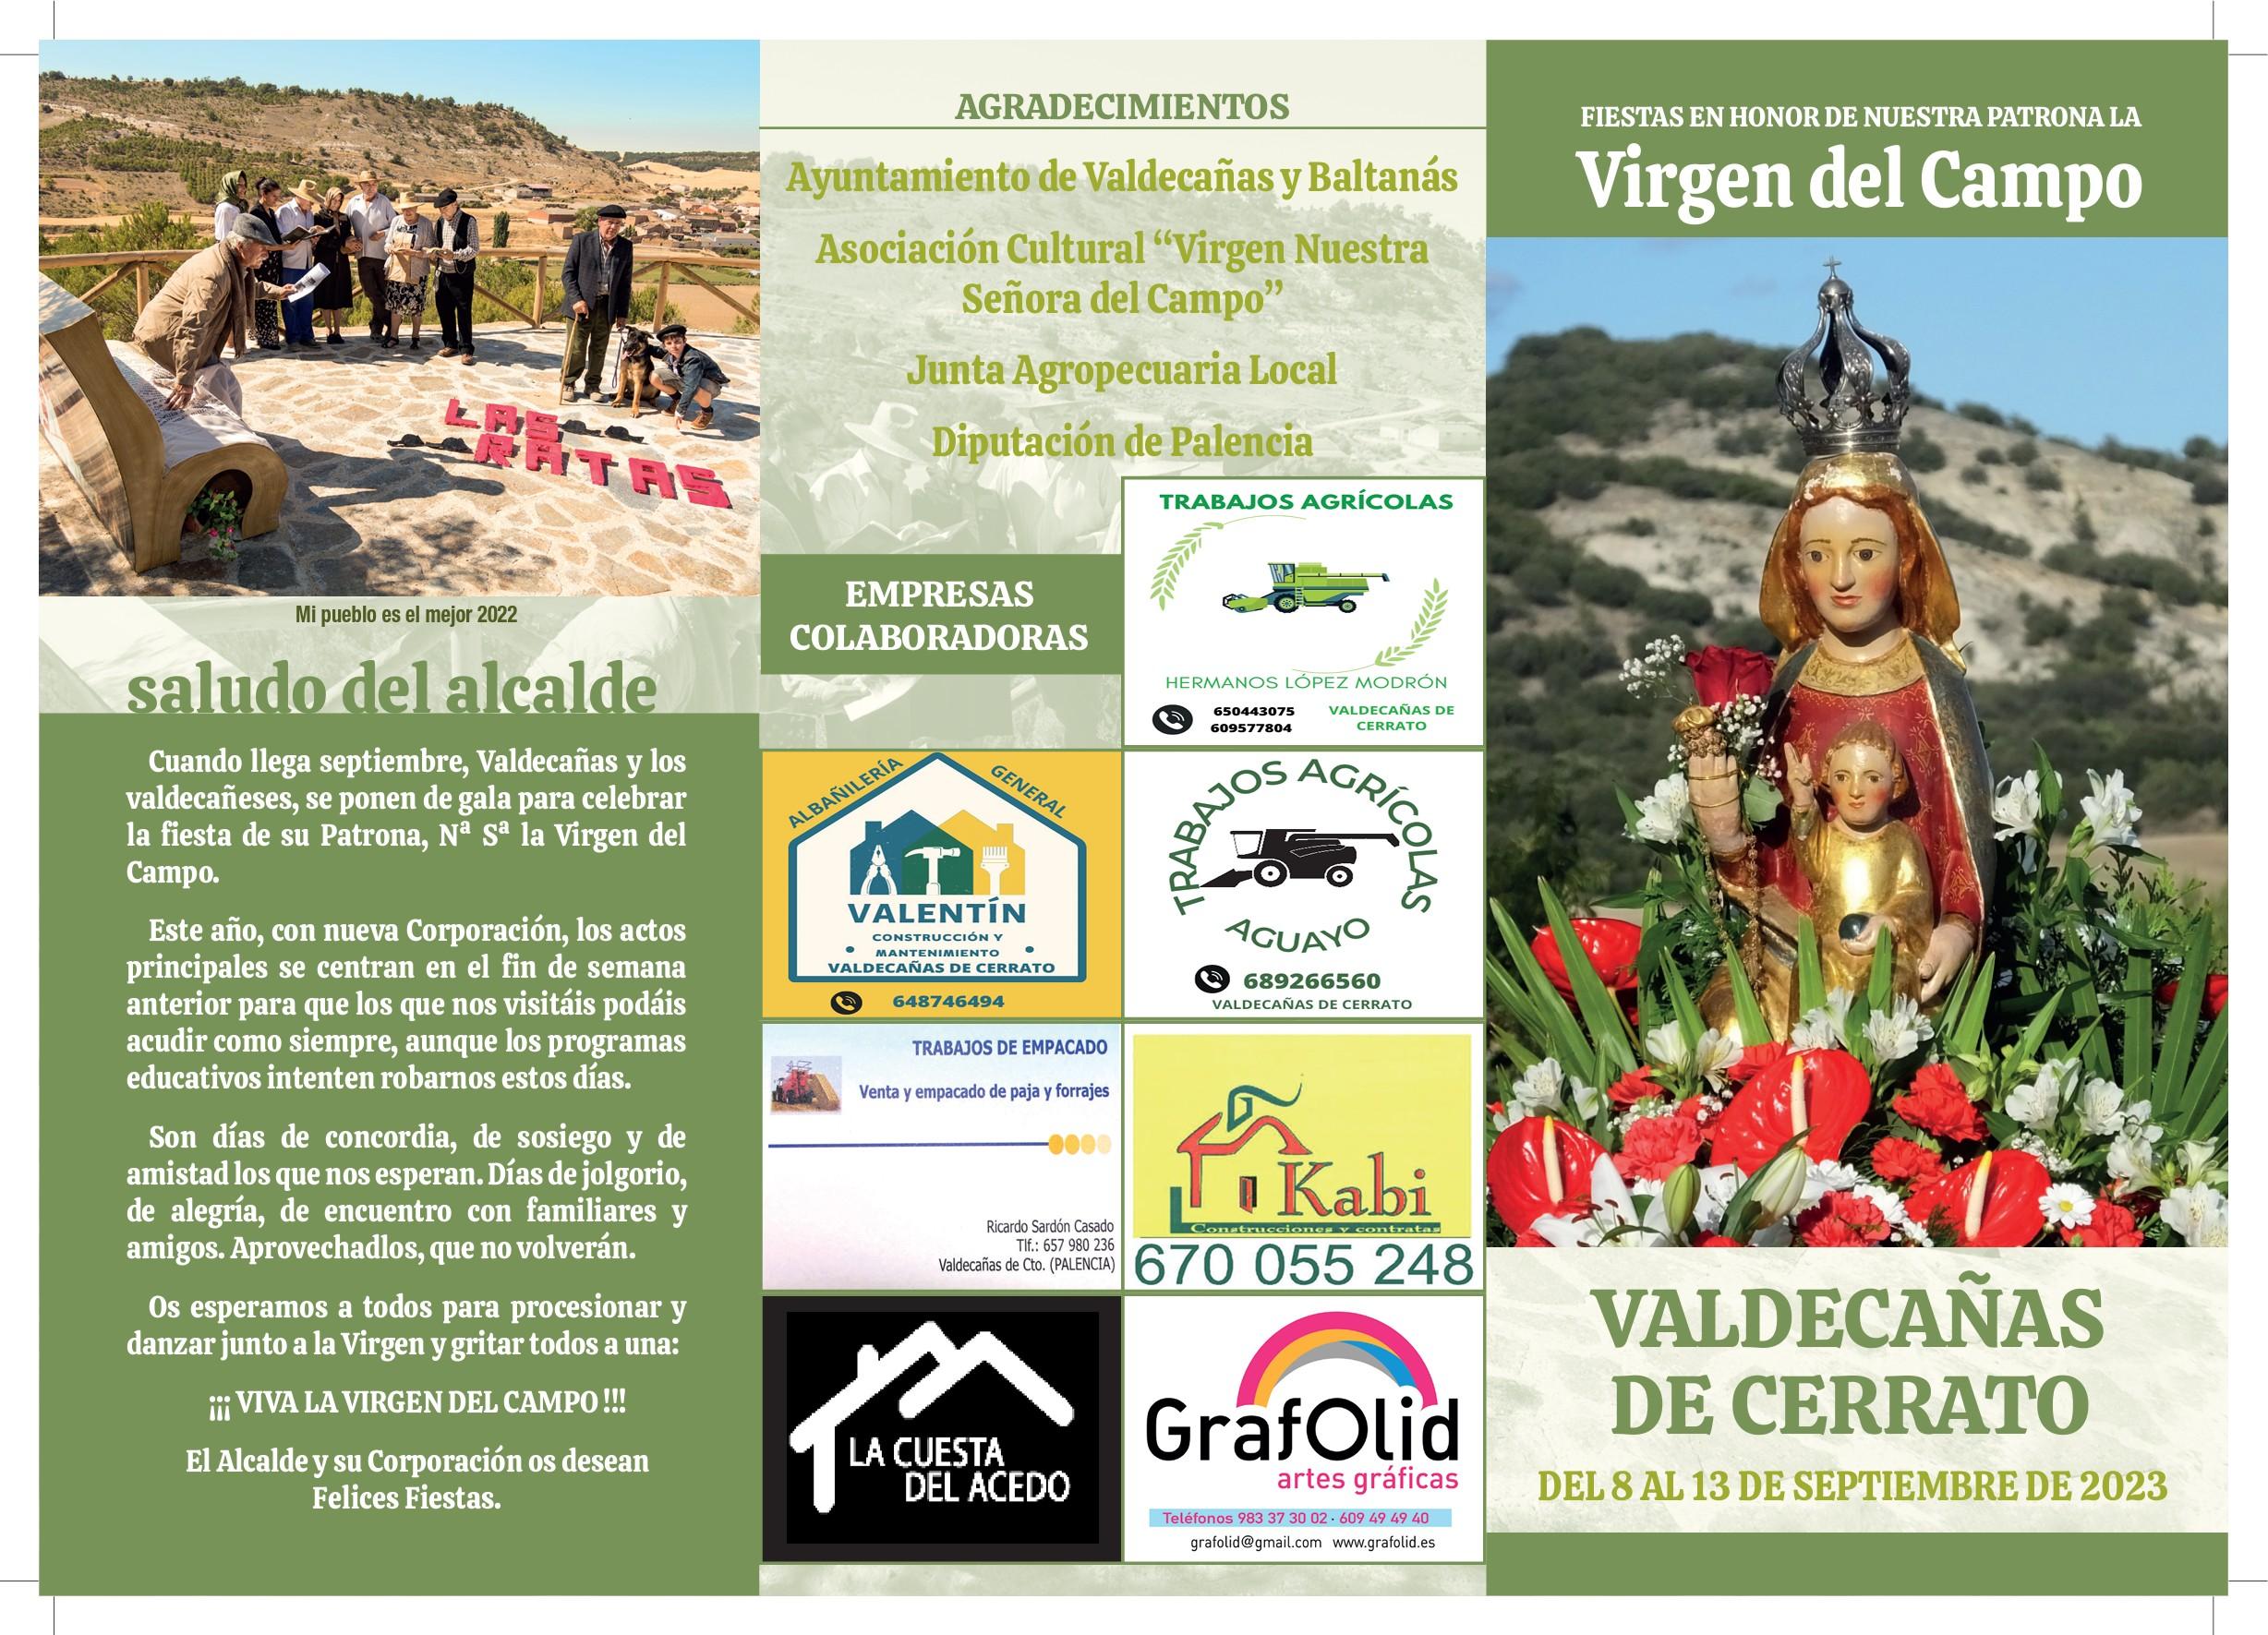 Fiestas en Honor a la Virgen del Campo - Valdecañas de Cerrato0